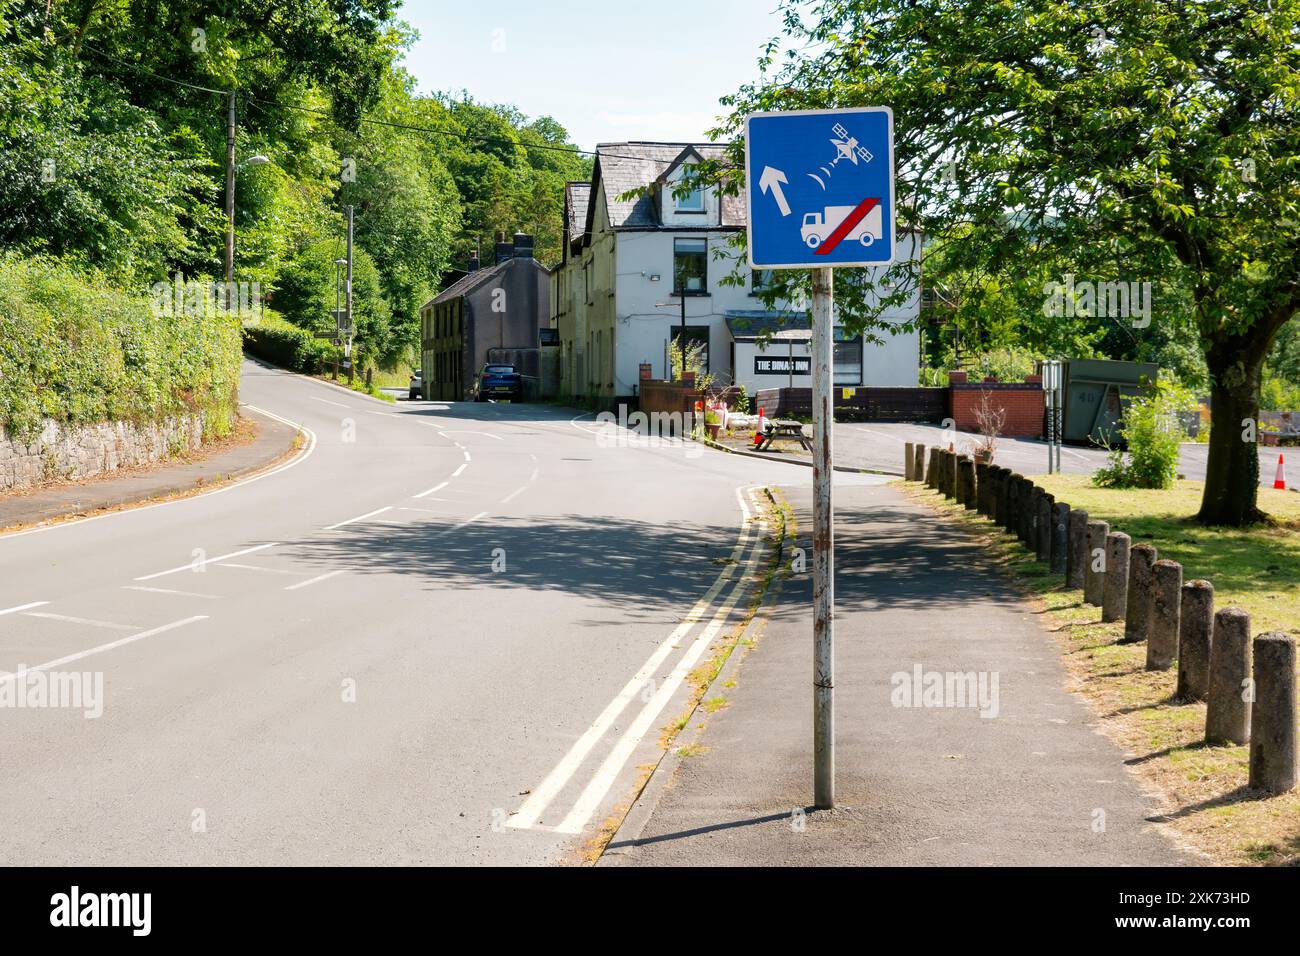 Wales, Großbritannien. Ein Verkehrsinformationsschild, das LKW und andere große Fahrzeuge anweist, die Ratschläge des Navigationssystems zu ignorieren, um die ungeeignete schmale Straße vor sich zu nehmen Stockfoto